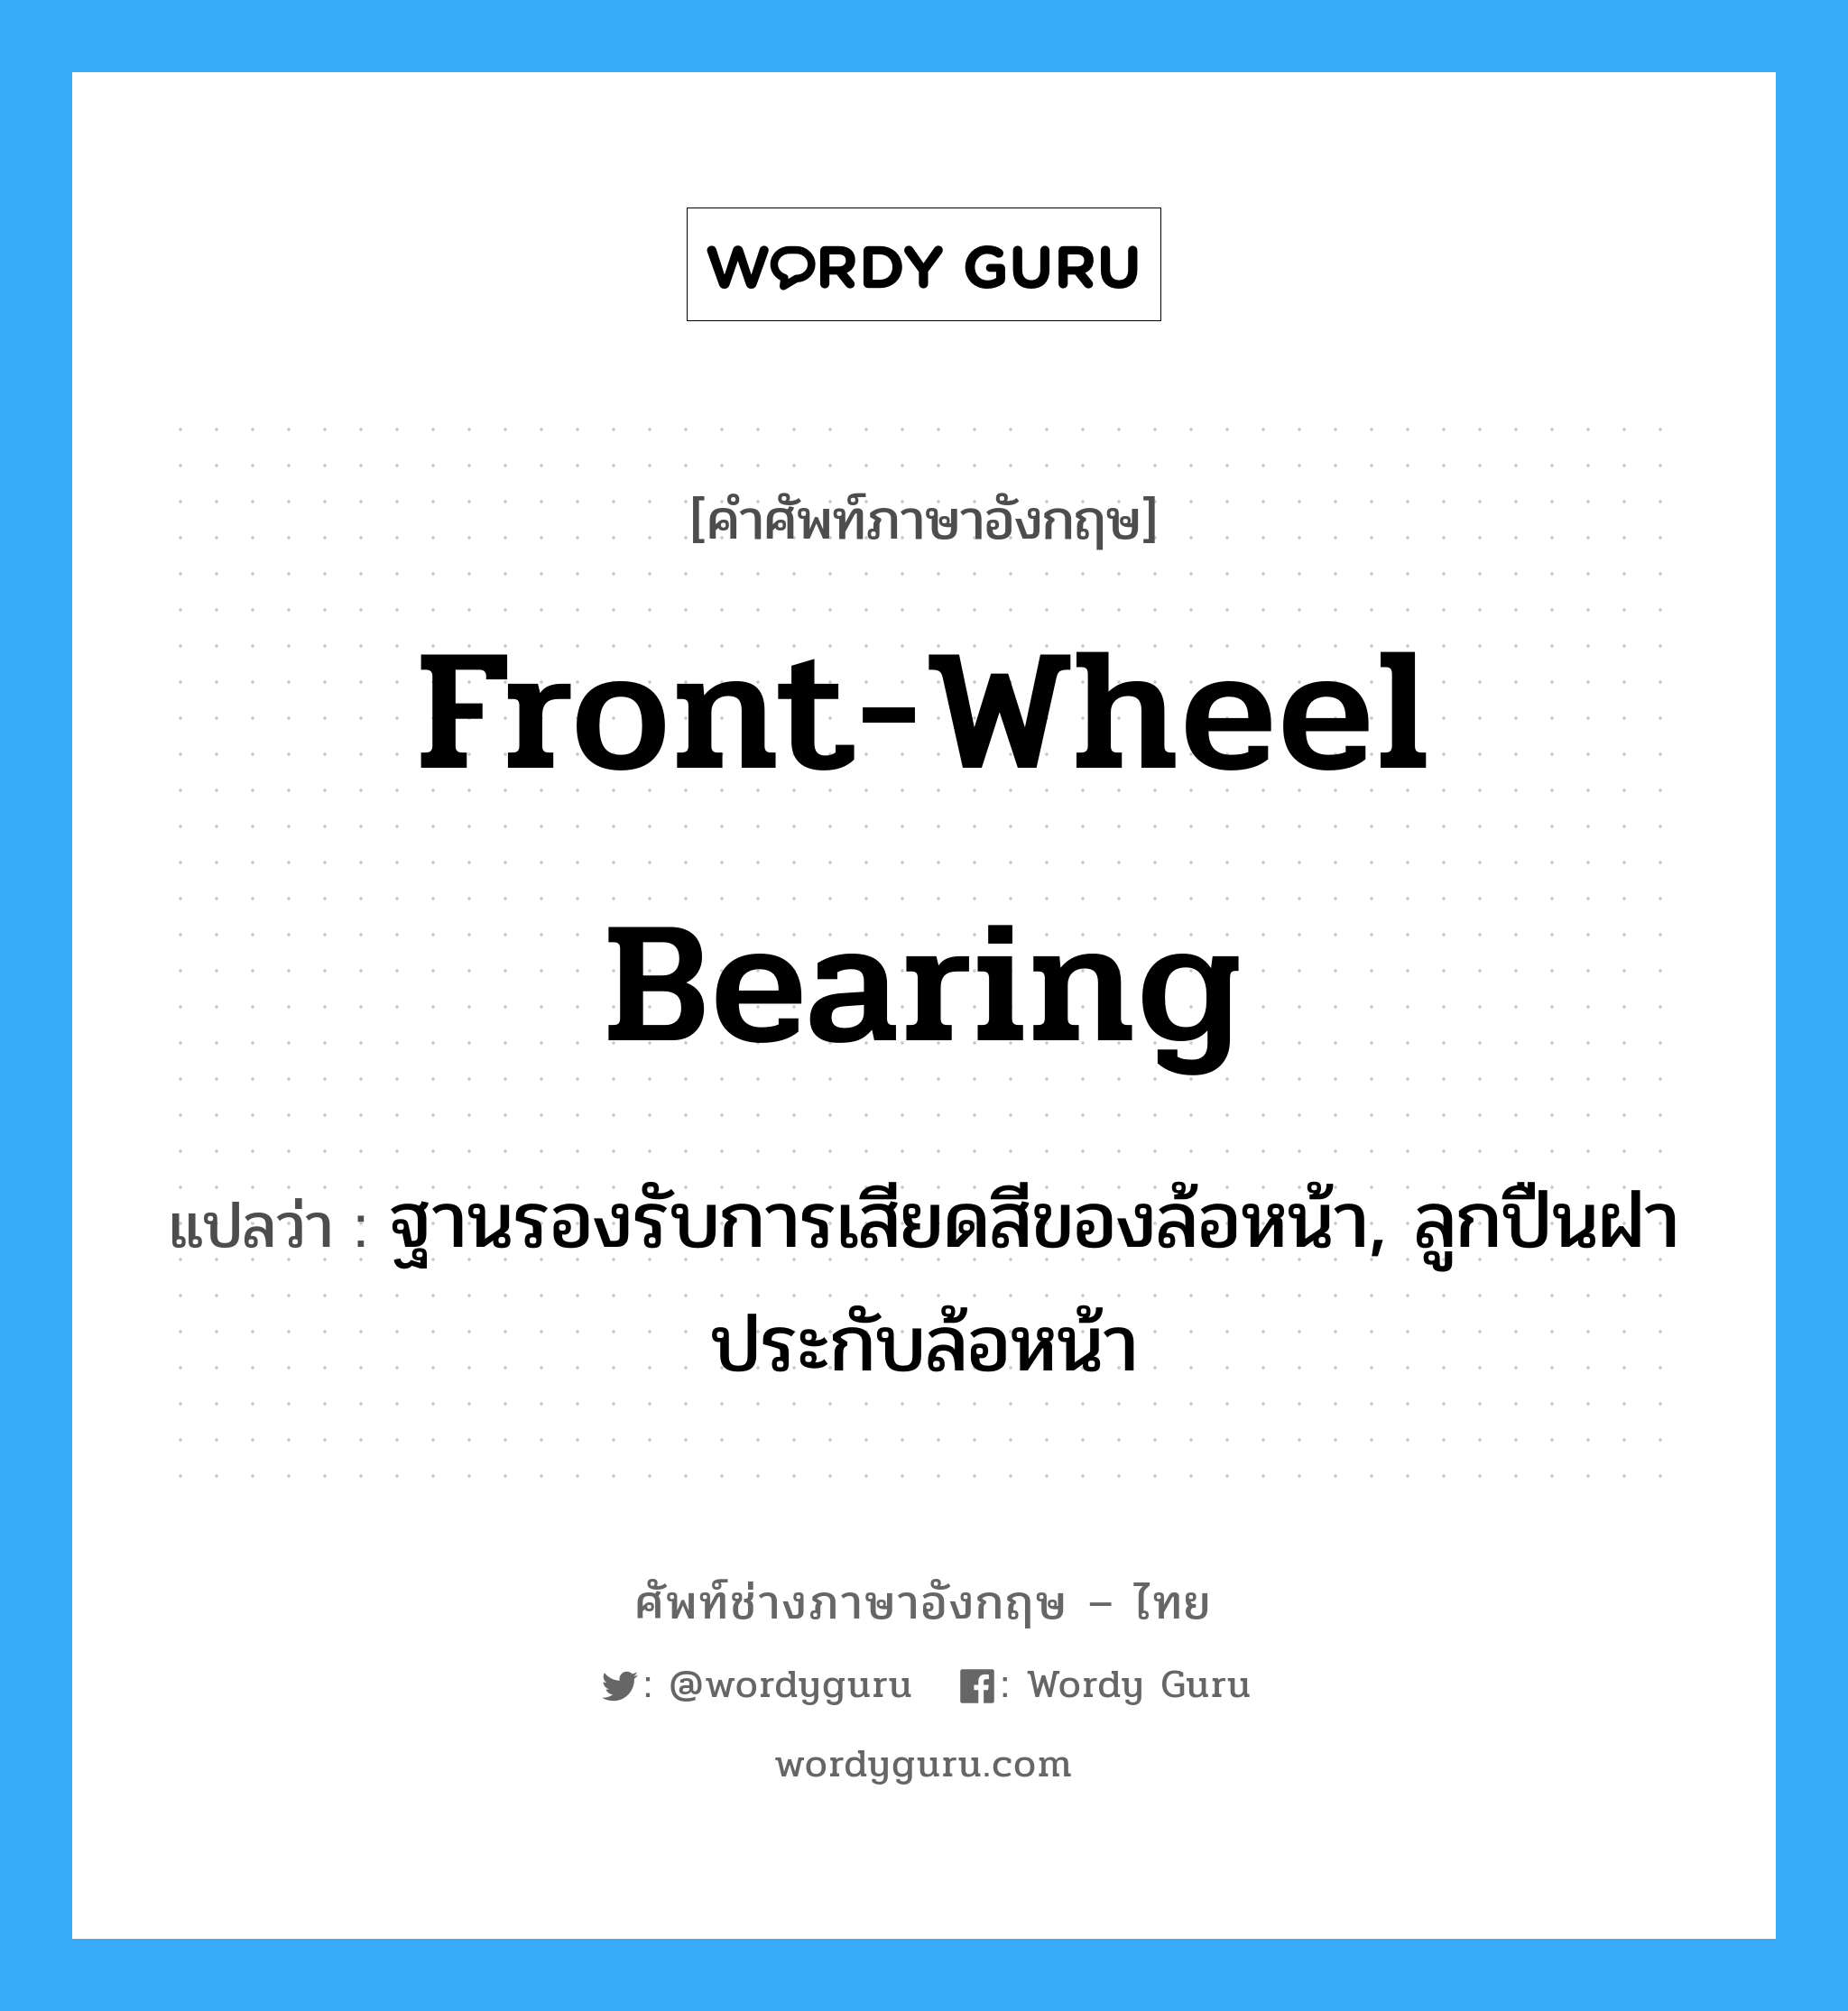 front-wheel bearing แปลว่า?, คำศัพท์ช่างภาษาอังกฤษ - ไทย front-wheel bearing คำศัพท์ภาษาอังกฤษ front-wheel bearing แปลว่า ฐานรองรับการเสียดสีของล้อหน้า, ลูกปืนฝาประกับล้อหน้า